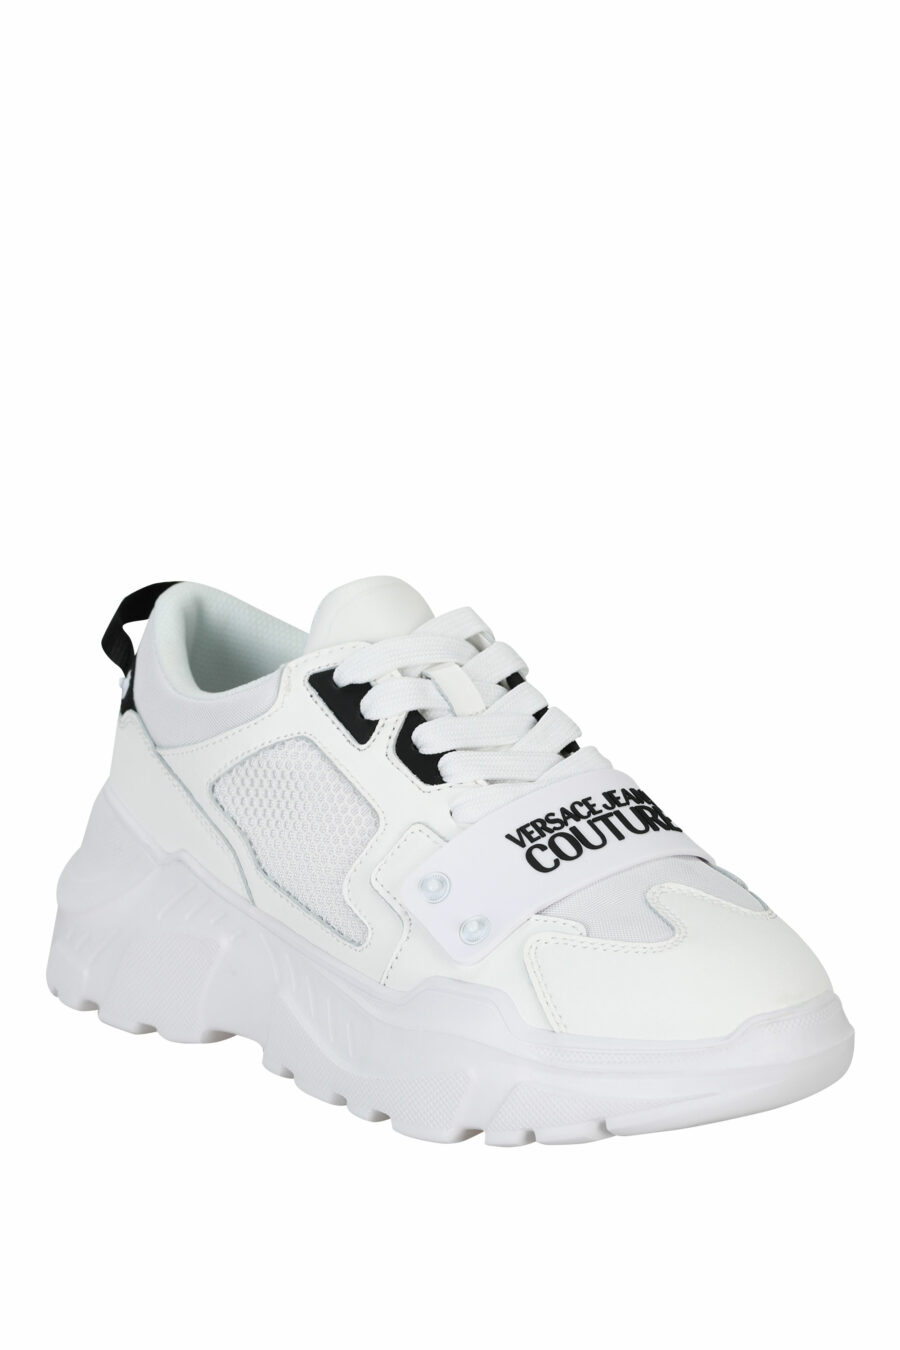 Weiße "Speedtrack"-Schuhe mit schwarzem Gummi-Mini-Logo auf der Vorderseite - 8052019604337 1